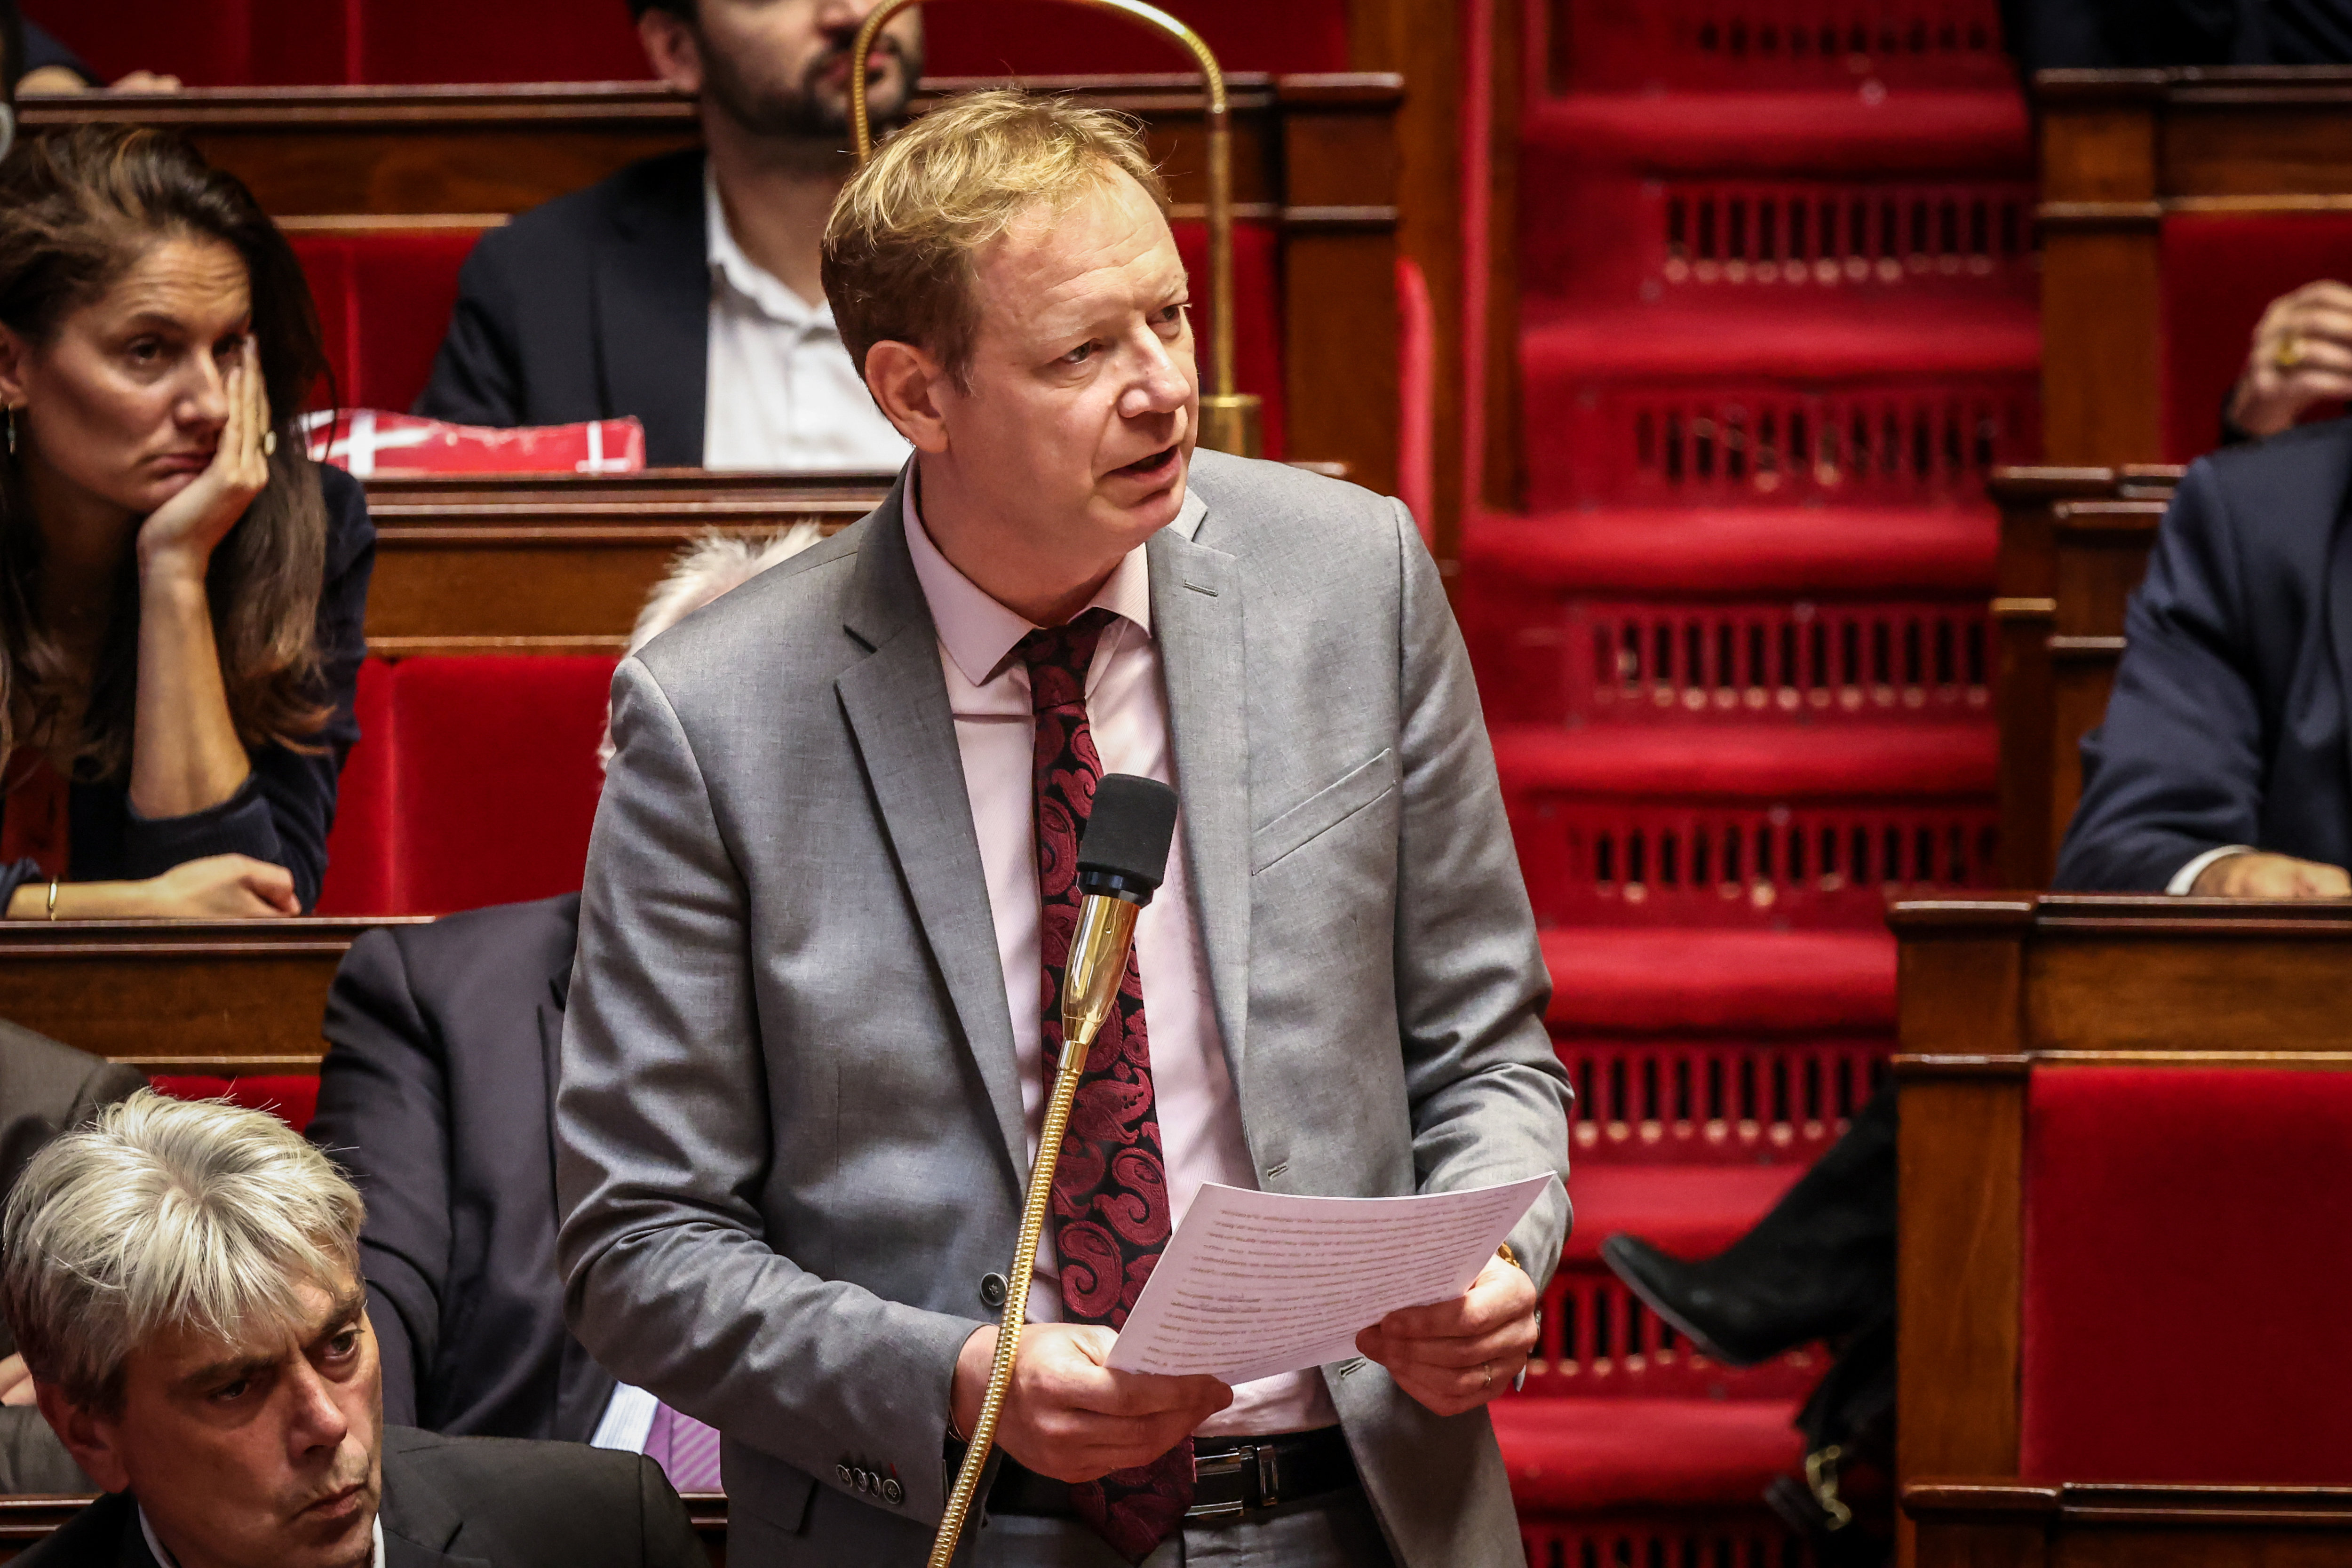 Le député communiste Pierre Dharréville a suspendu sa participation au débat autour du projet de loi sur la fin de vie, qu'il juge "brutal". LP/Fred Dugit.